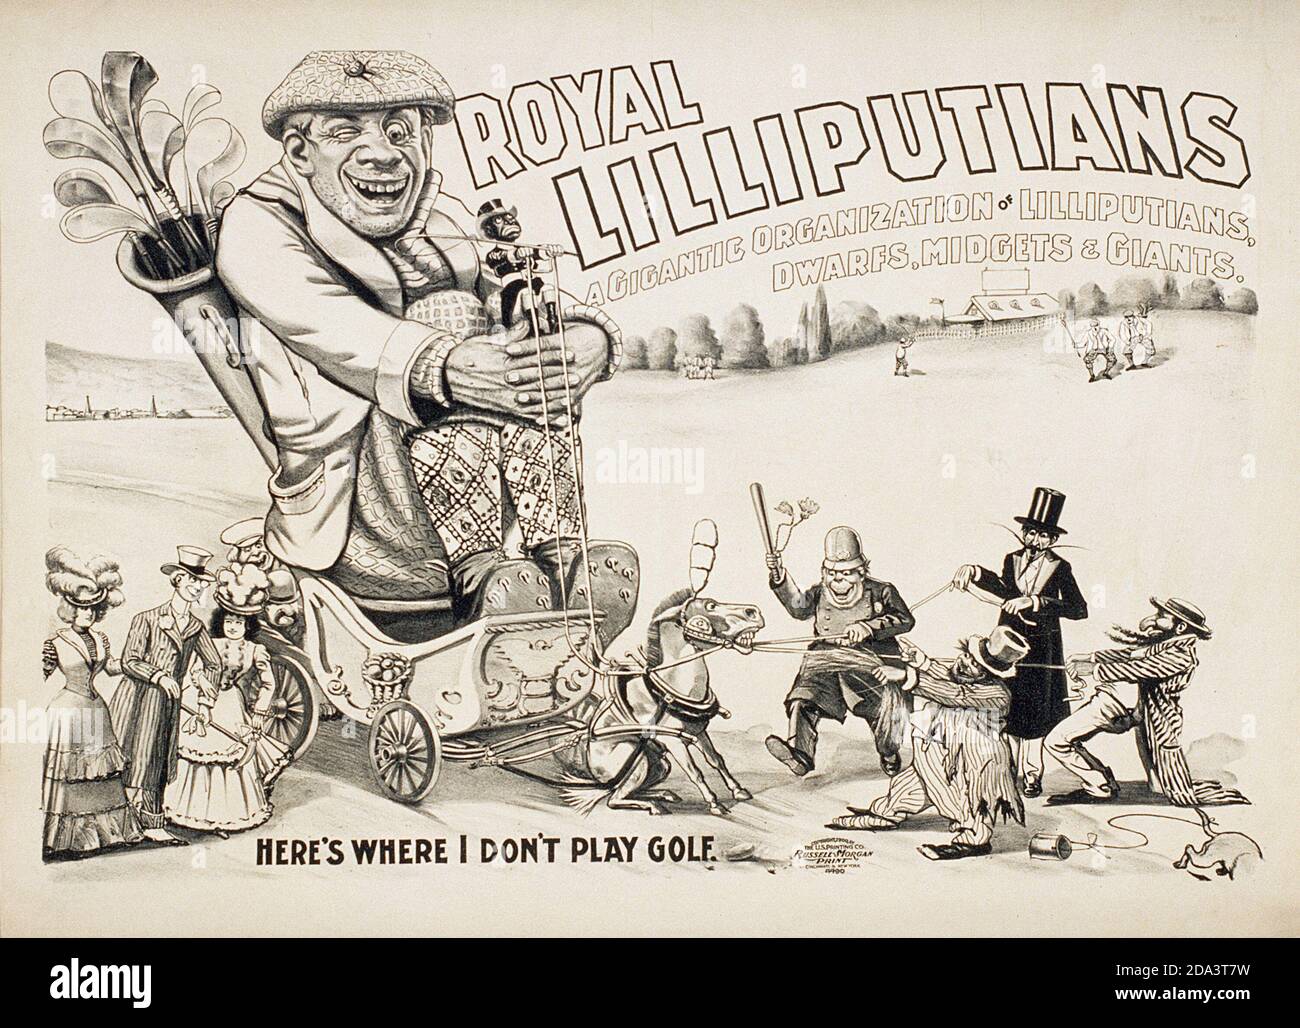 Illustration: Royal Lilliputans Golfspieler, 'Here's Where I Don't Play Golf' EINE gigantische Organisation von Lilliputans, Zwergen, Zwergen & Riesen Stockfoto